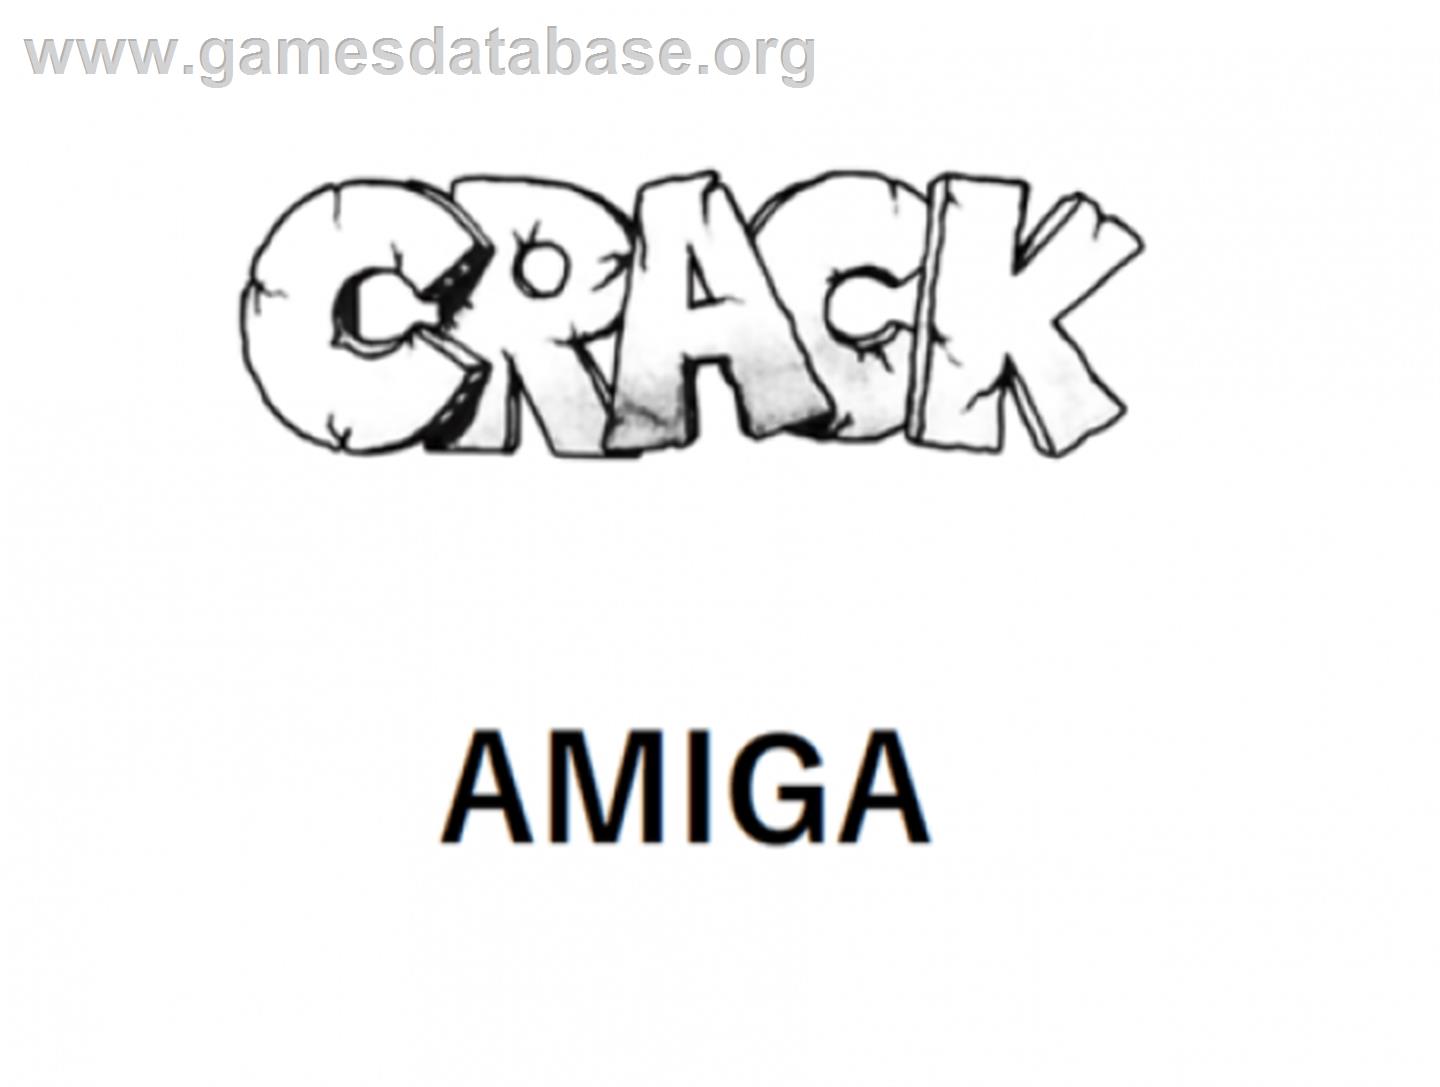 Crack - Commodore Amiga - Artwork - Cartridge Top